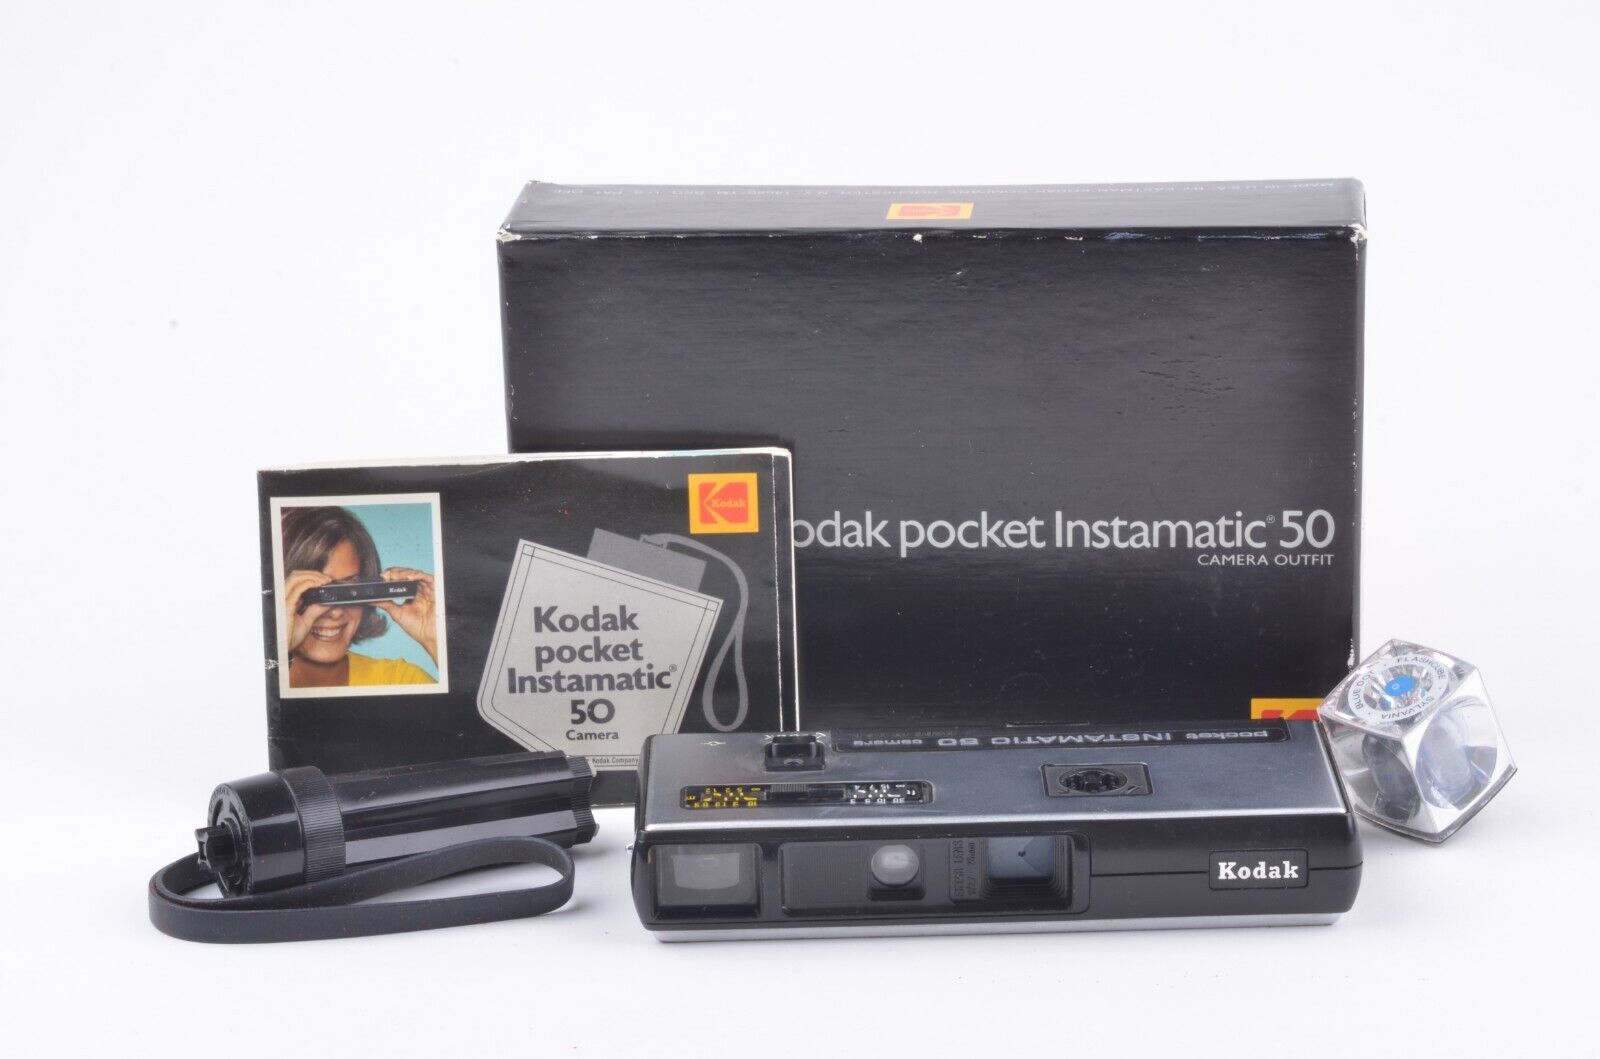 Kodak Instamatic camera turns 50